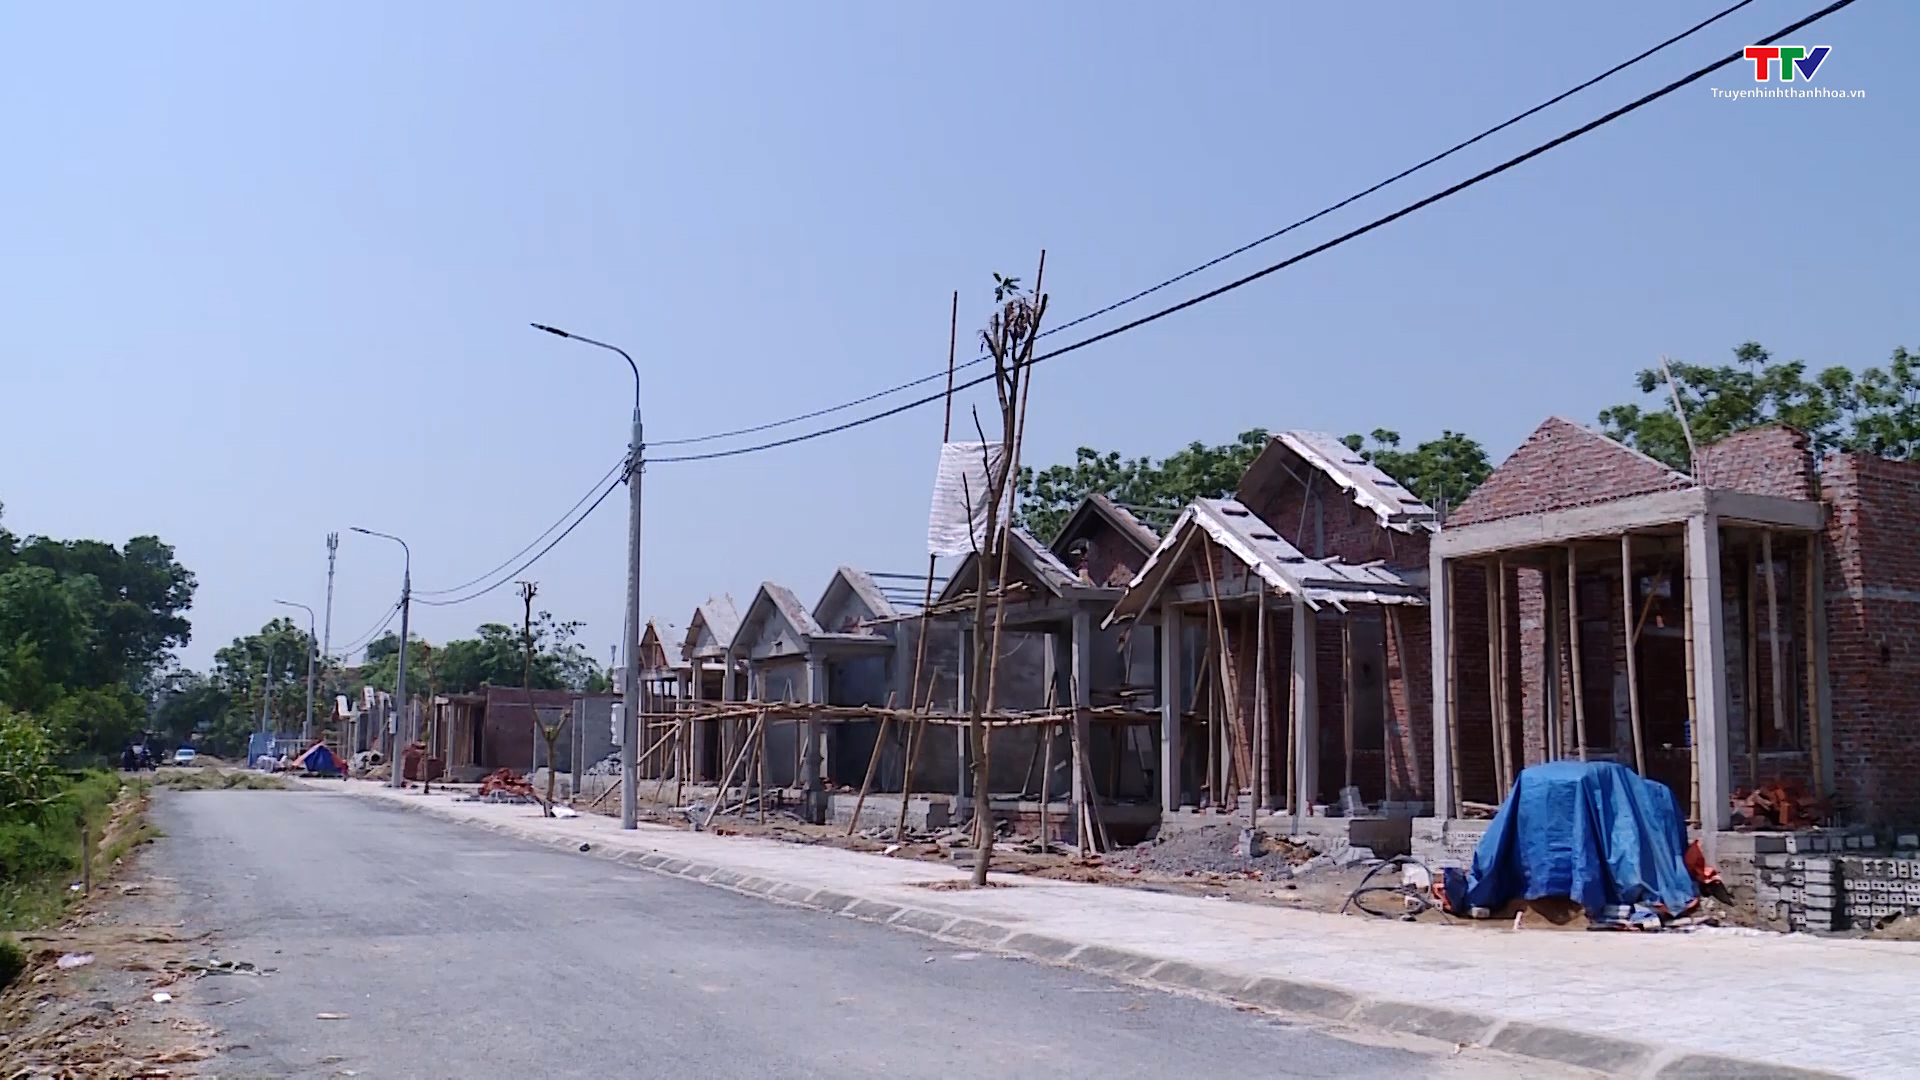 Huyện Thiệu Hóa phấn đấu đến ngày 30/6 hoàn thành xây dựng nhà ở cho đồng bào sinh sống trên sông  - Ảnh 4.